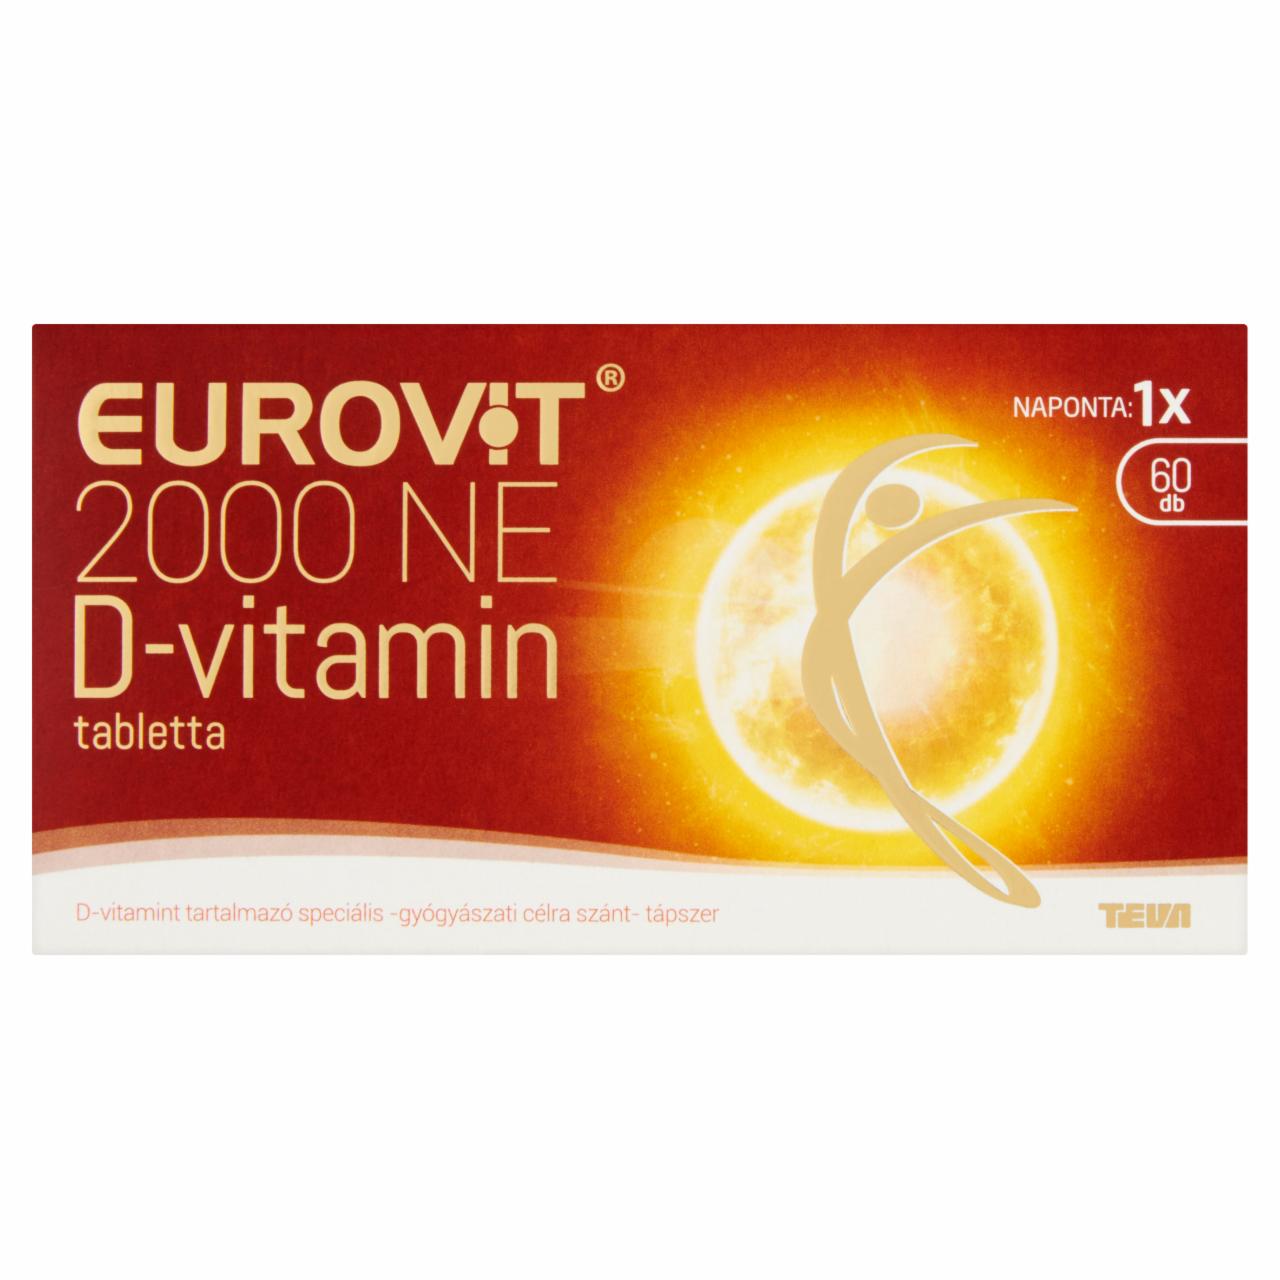 Képek - Eurovit 2000 NE D-vitamin tabletta 60 db 15 g